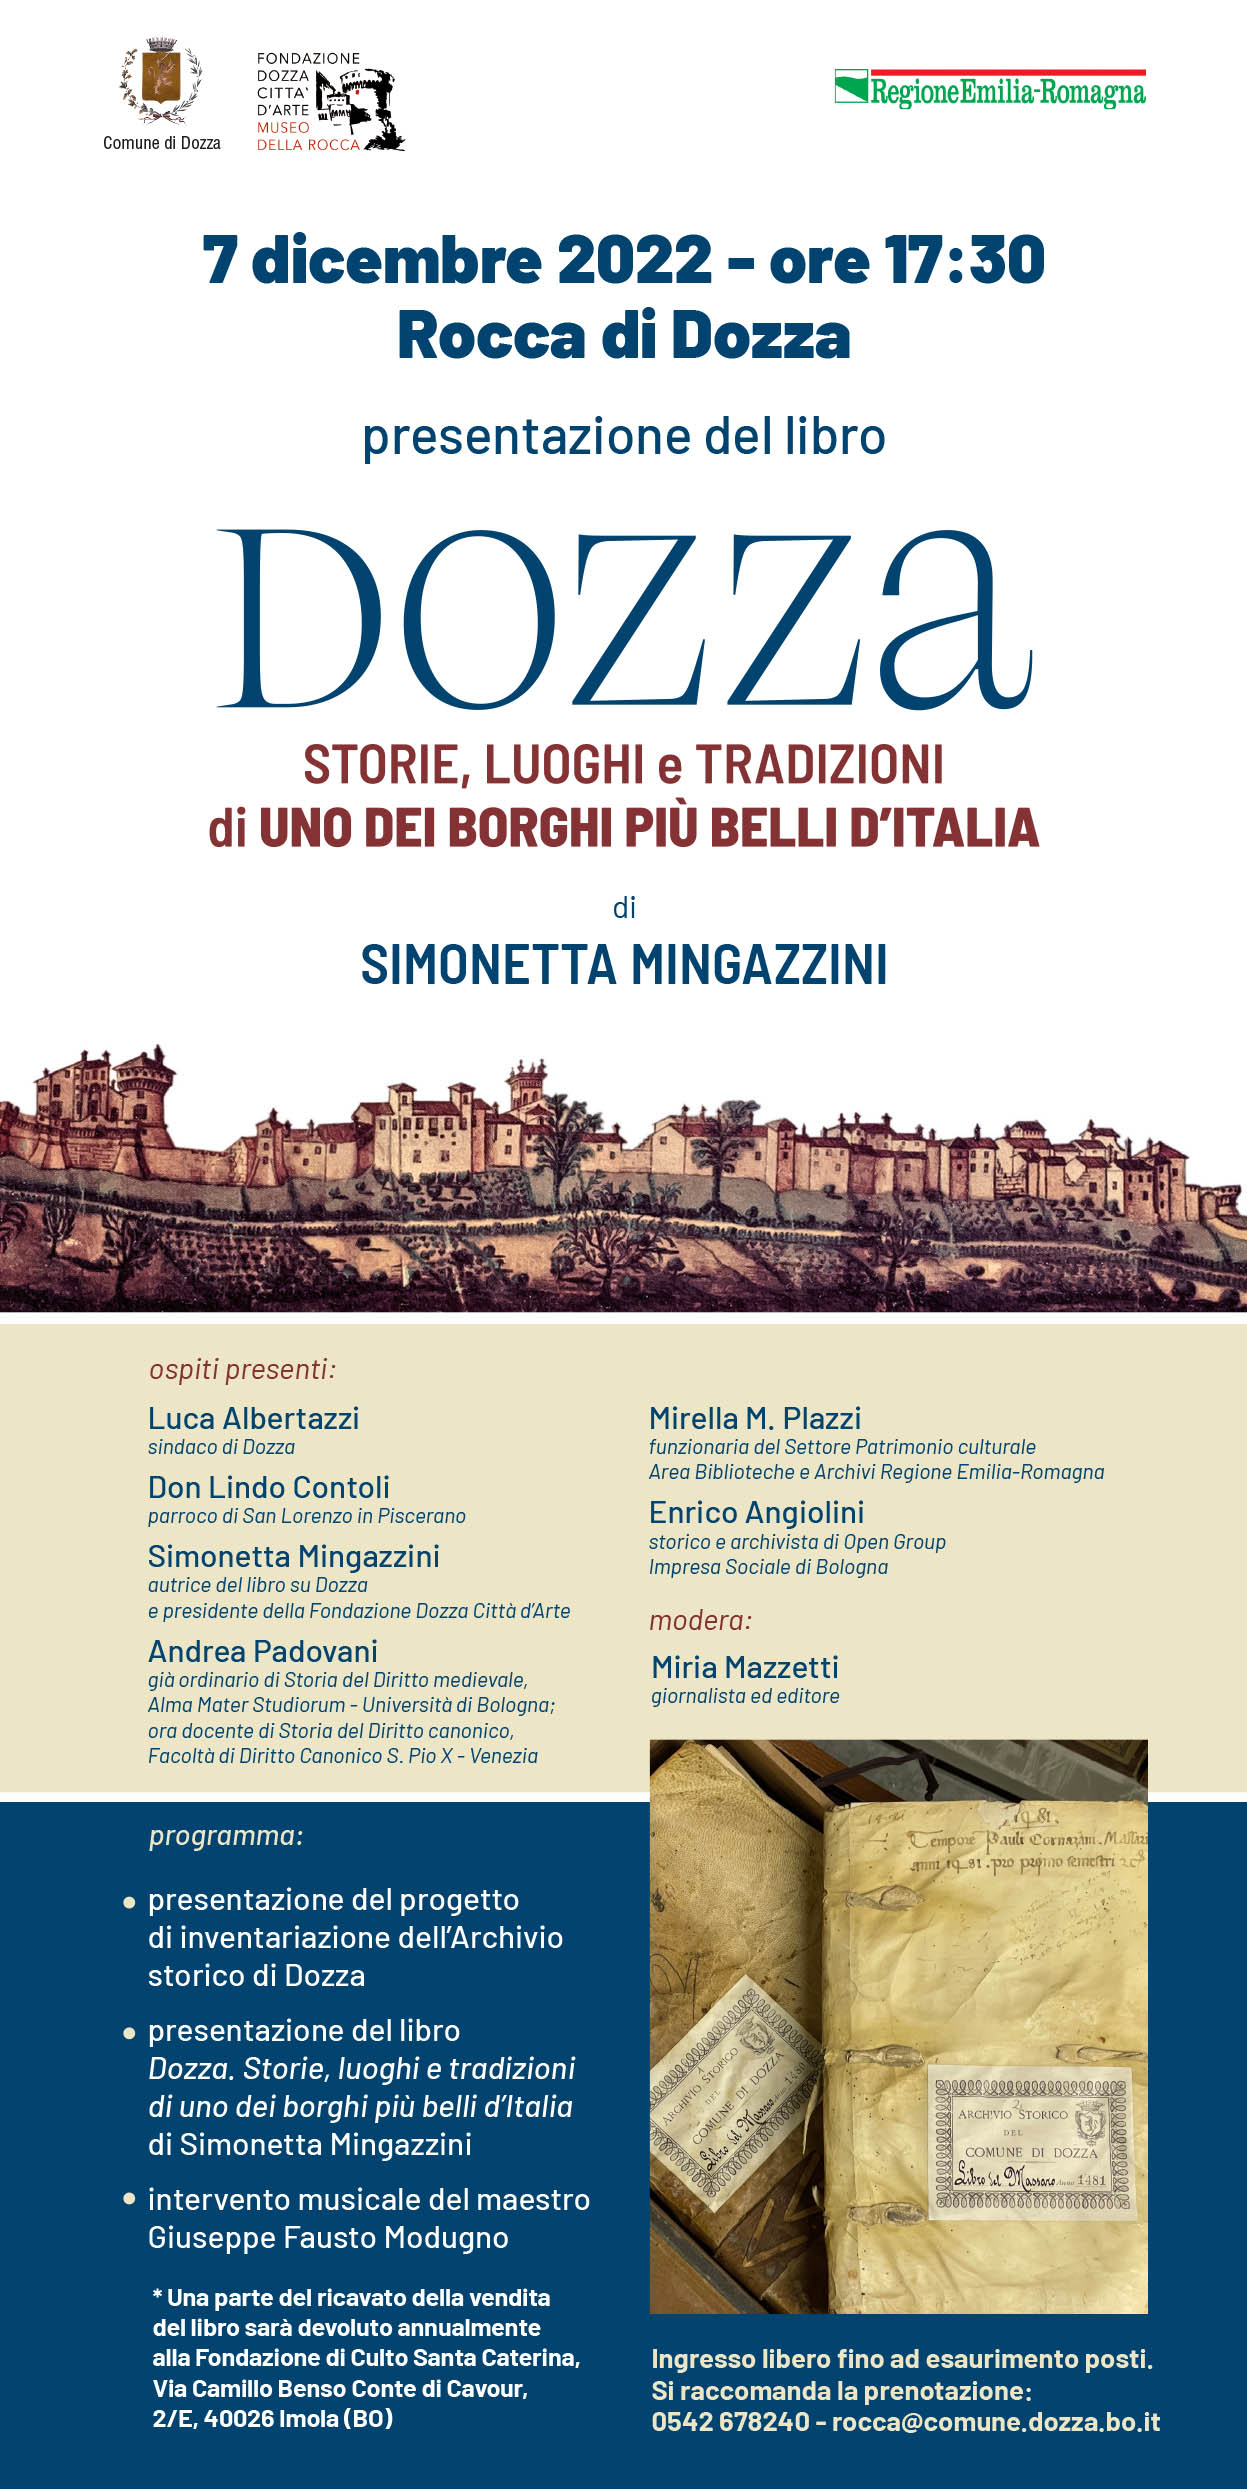  immagine dell'evento: L'ARCHIVIO IN RETE + DOZZA. STORIE, LUOGHI E TRADIZIONI DI UNO DEI BORGHI PIÙ BELLI D'ITALIA